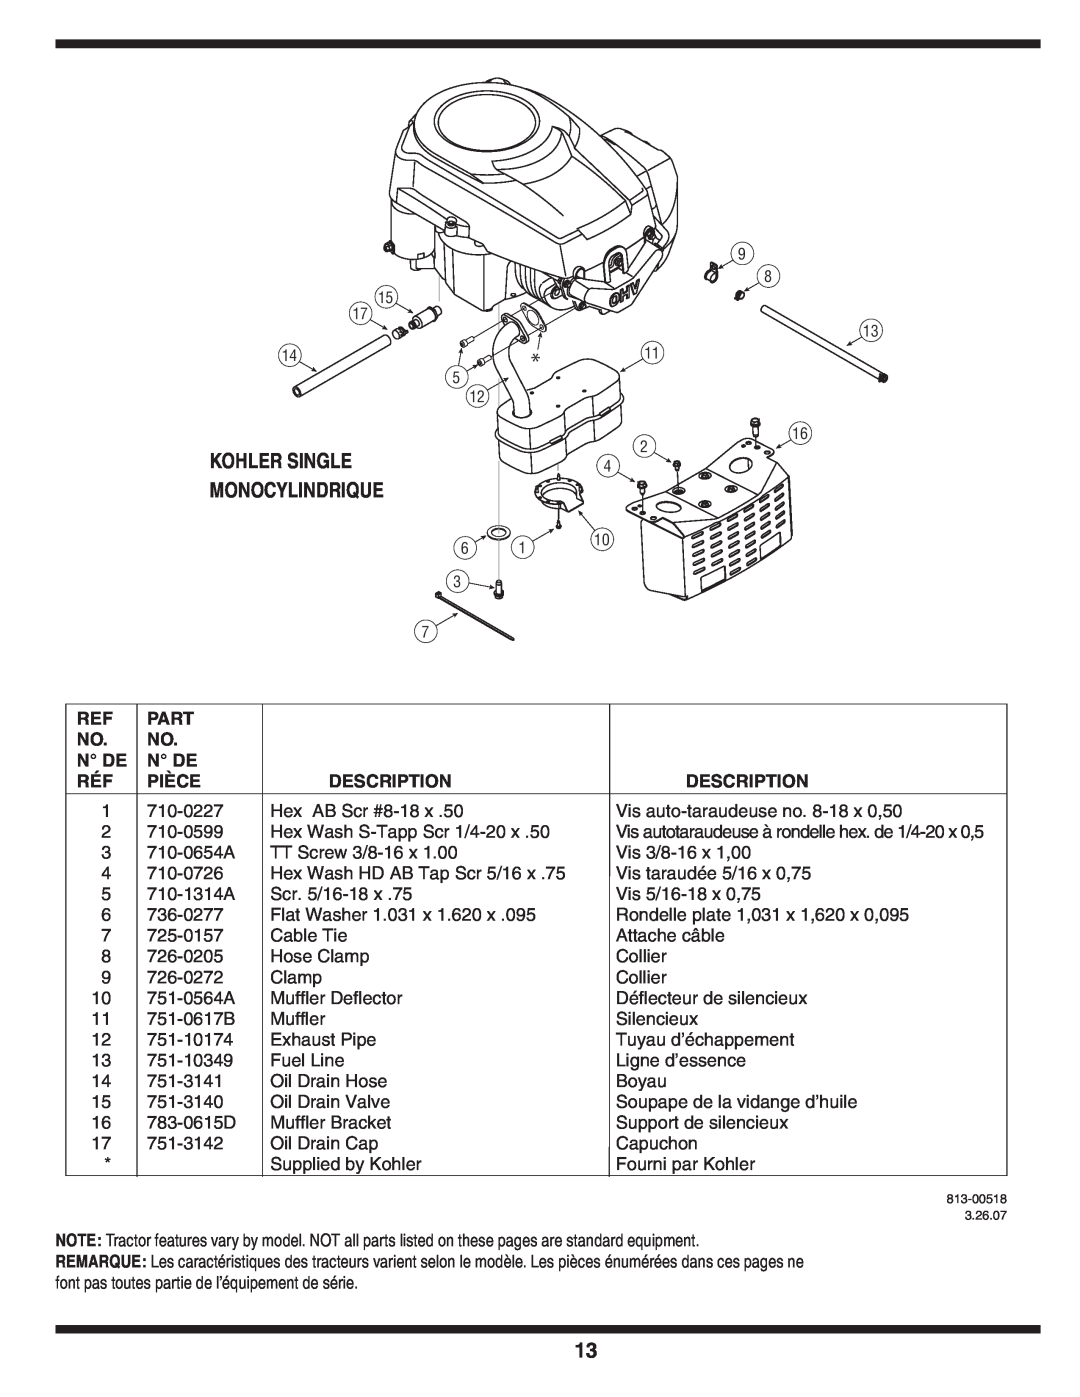 MTD 600 manual Kohler Single Monocylindrique, Part, N De, Pièce, Description 